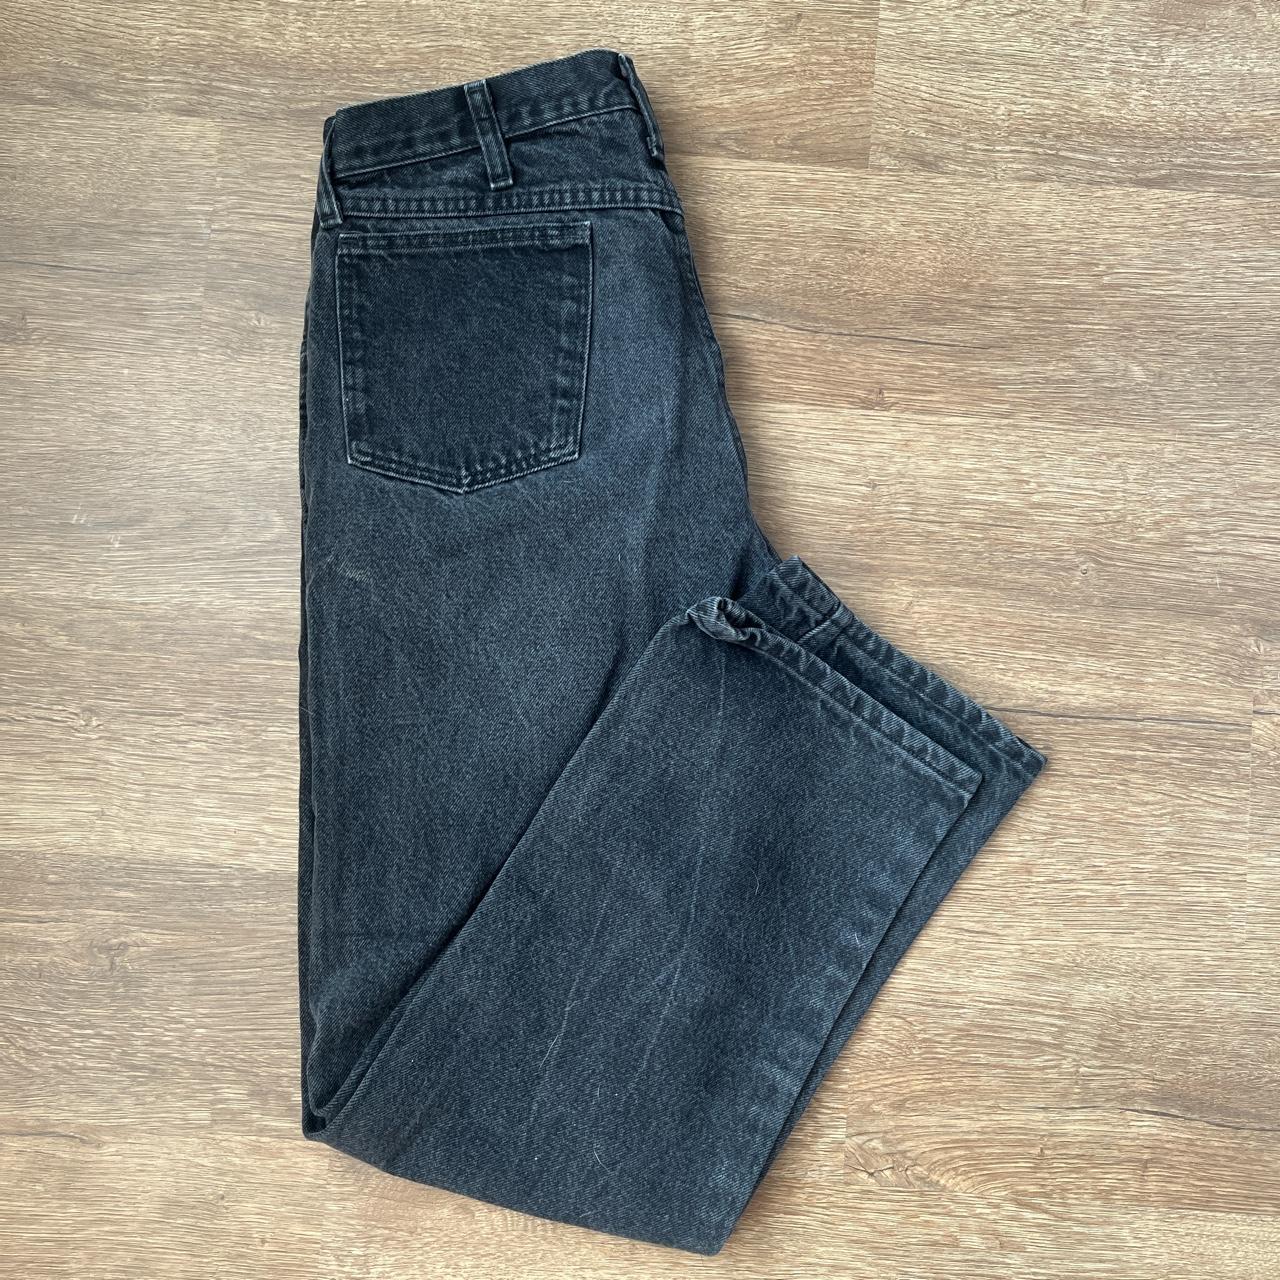 Vintage Wrangler Rustler Jeans Wonderful Condition!... - Depop